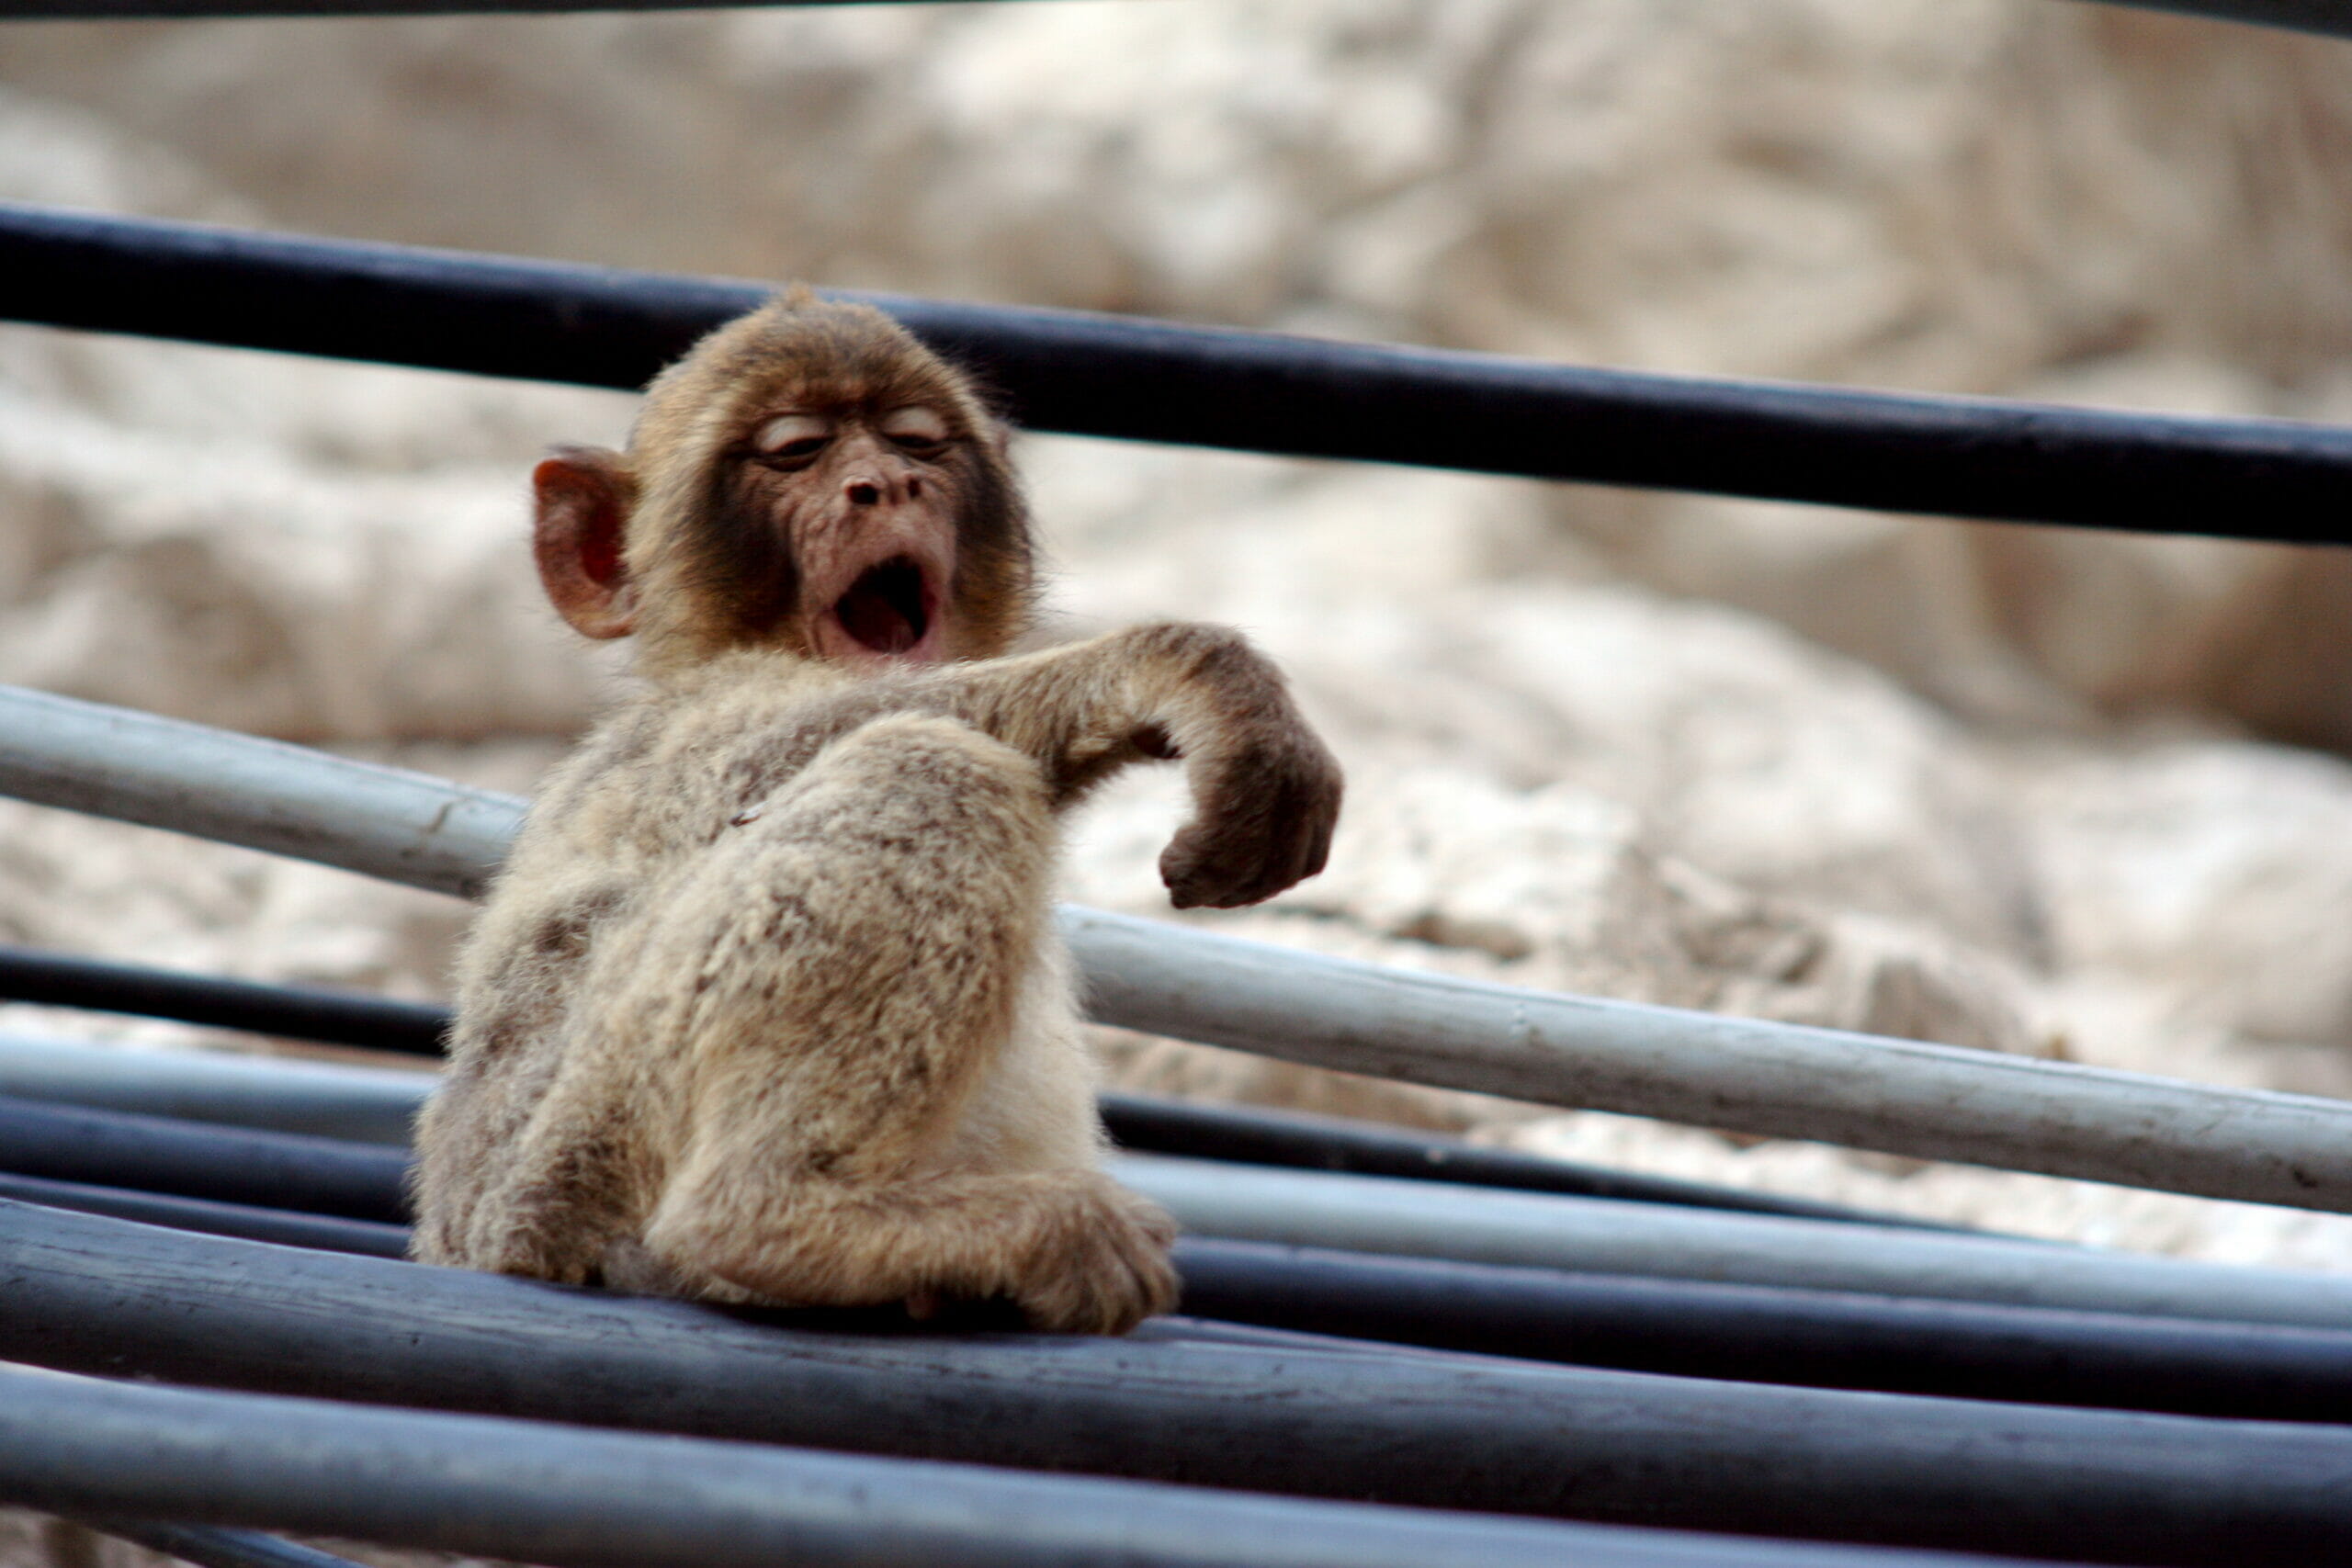 A monkey yawning